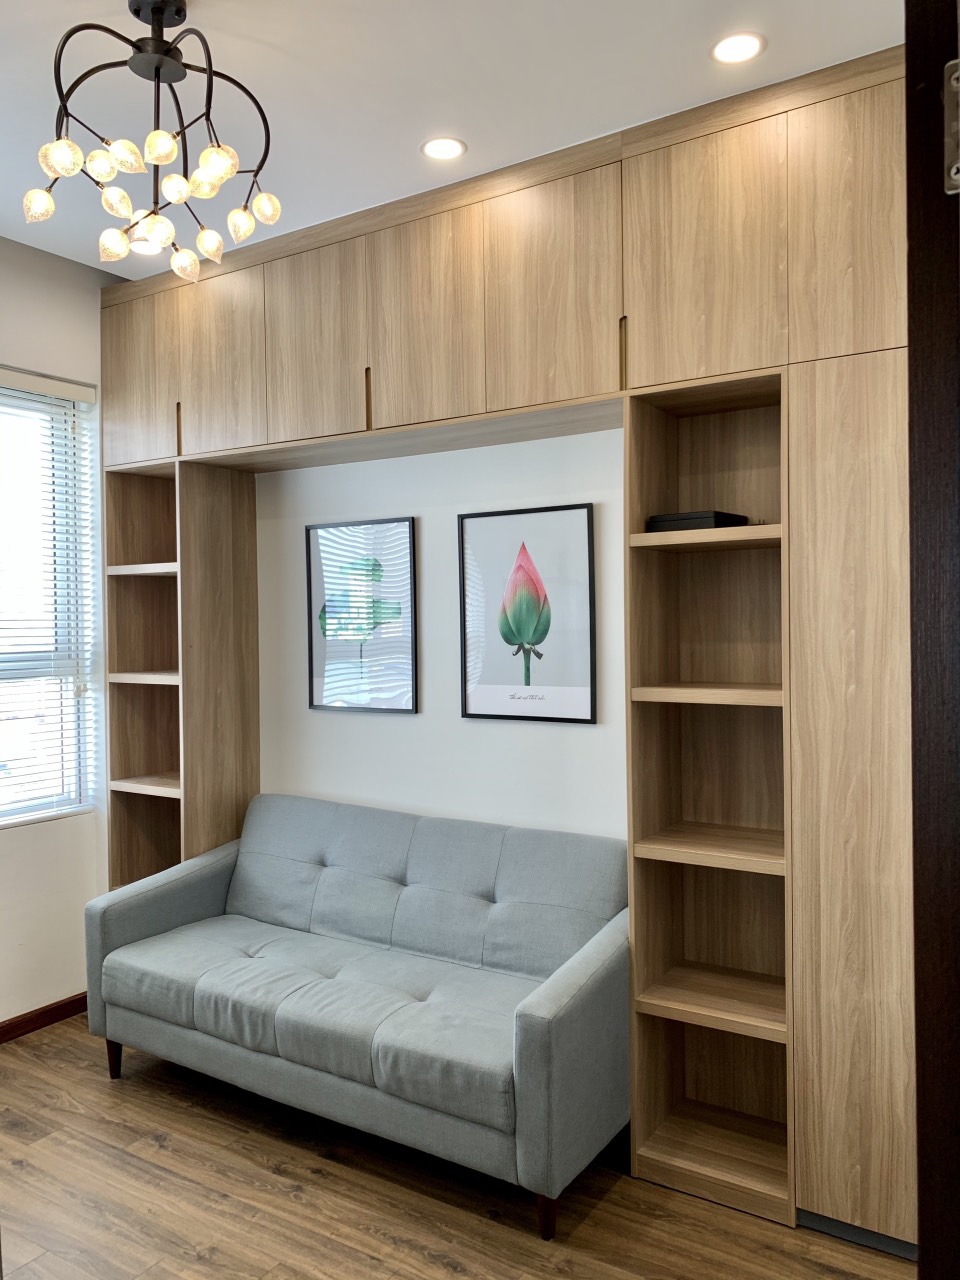 Cho thuê căn hộ Richstar Tân Phú, DT 91m2 3PN-2WC, có nội thất như hình, giá cực rẻ 